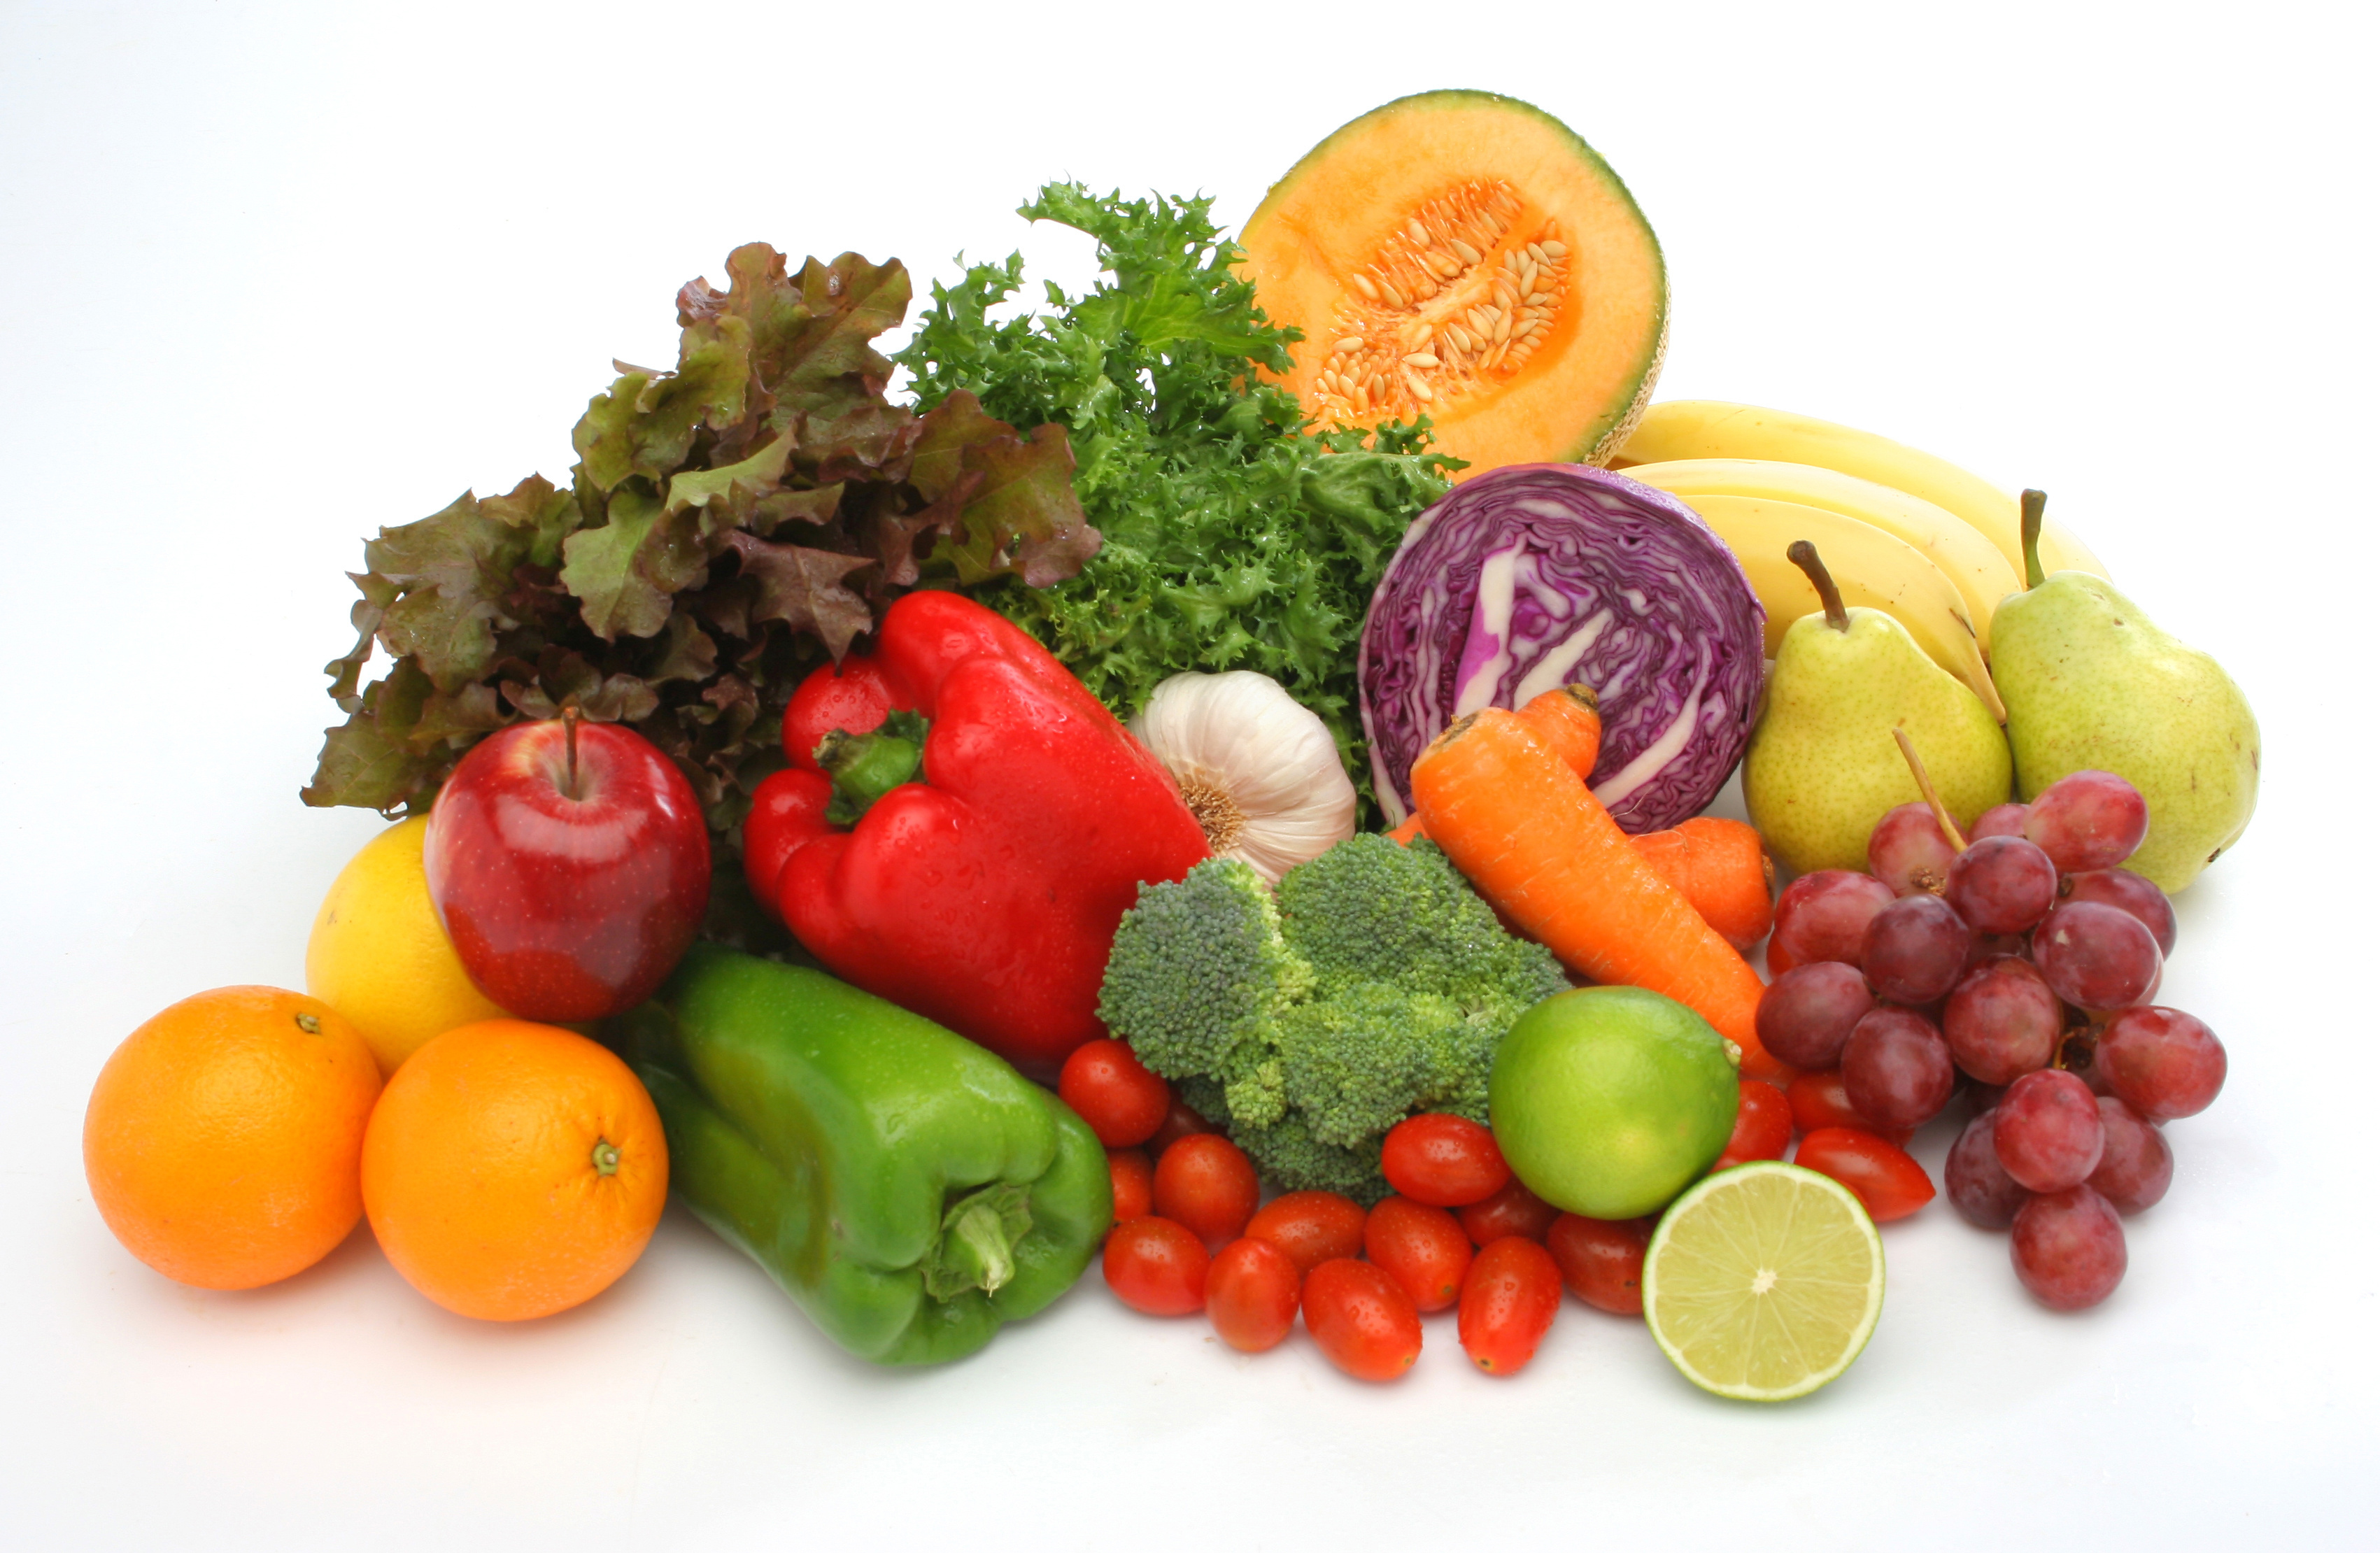 You like vegetables and fruits. Овощи и фрукты. Продукты питания овощи. Полезные продукты овощи. Полезные продукты фрукты.